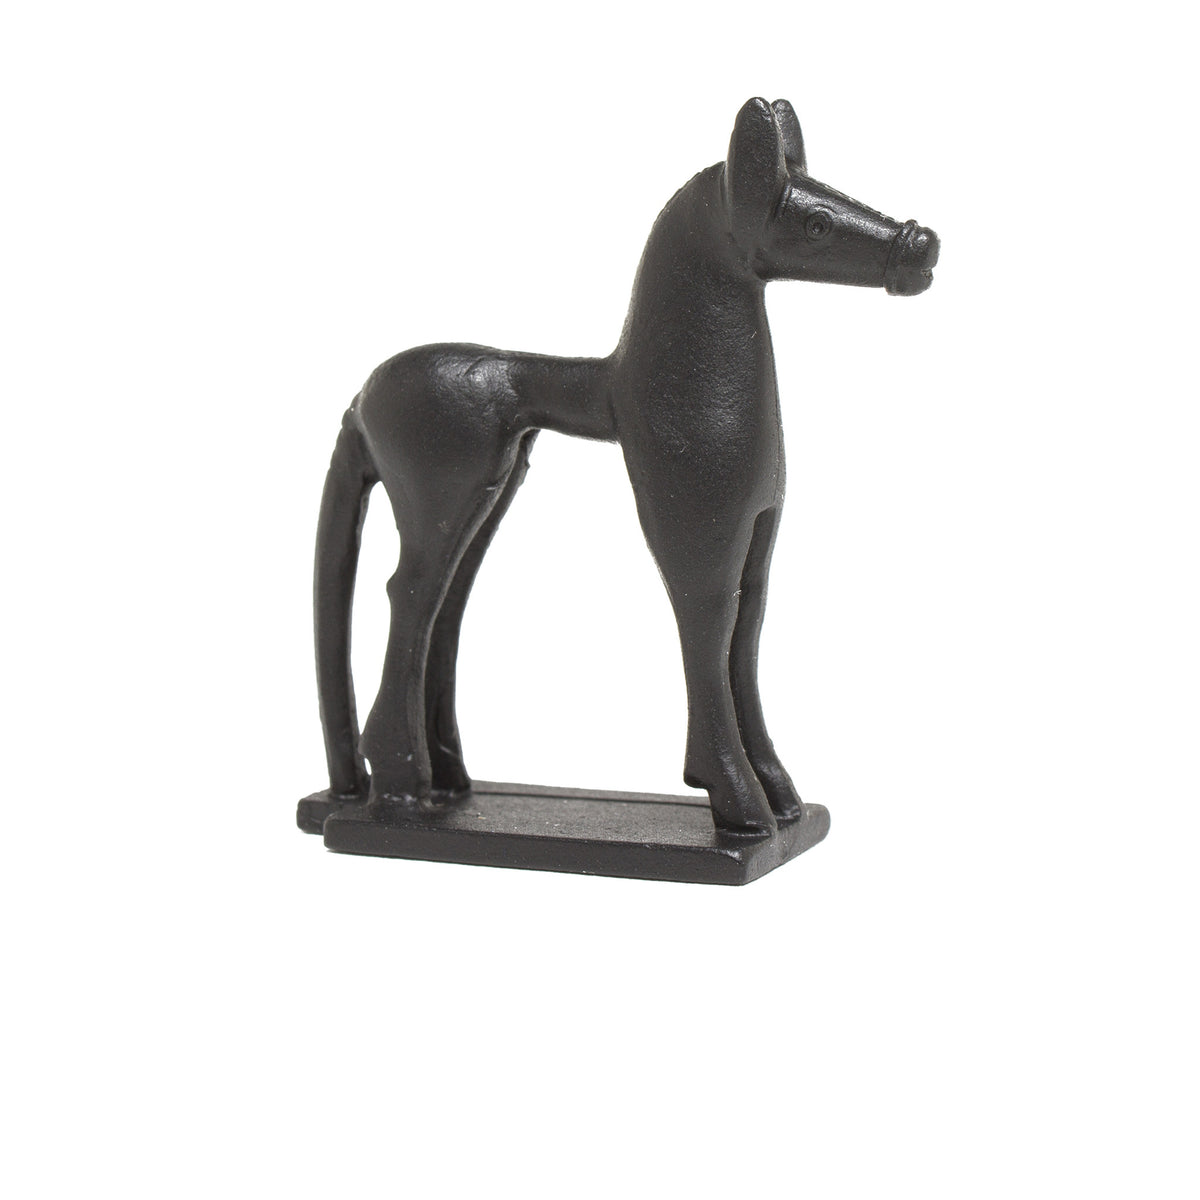 Sculpture of a Greek Horse in Miniature